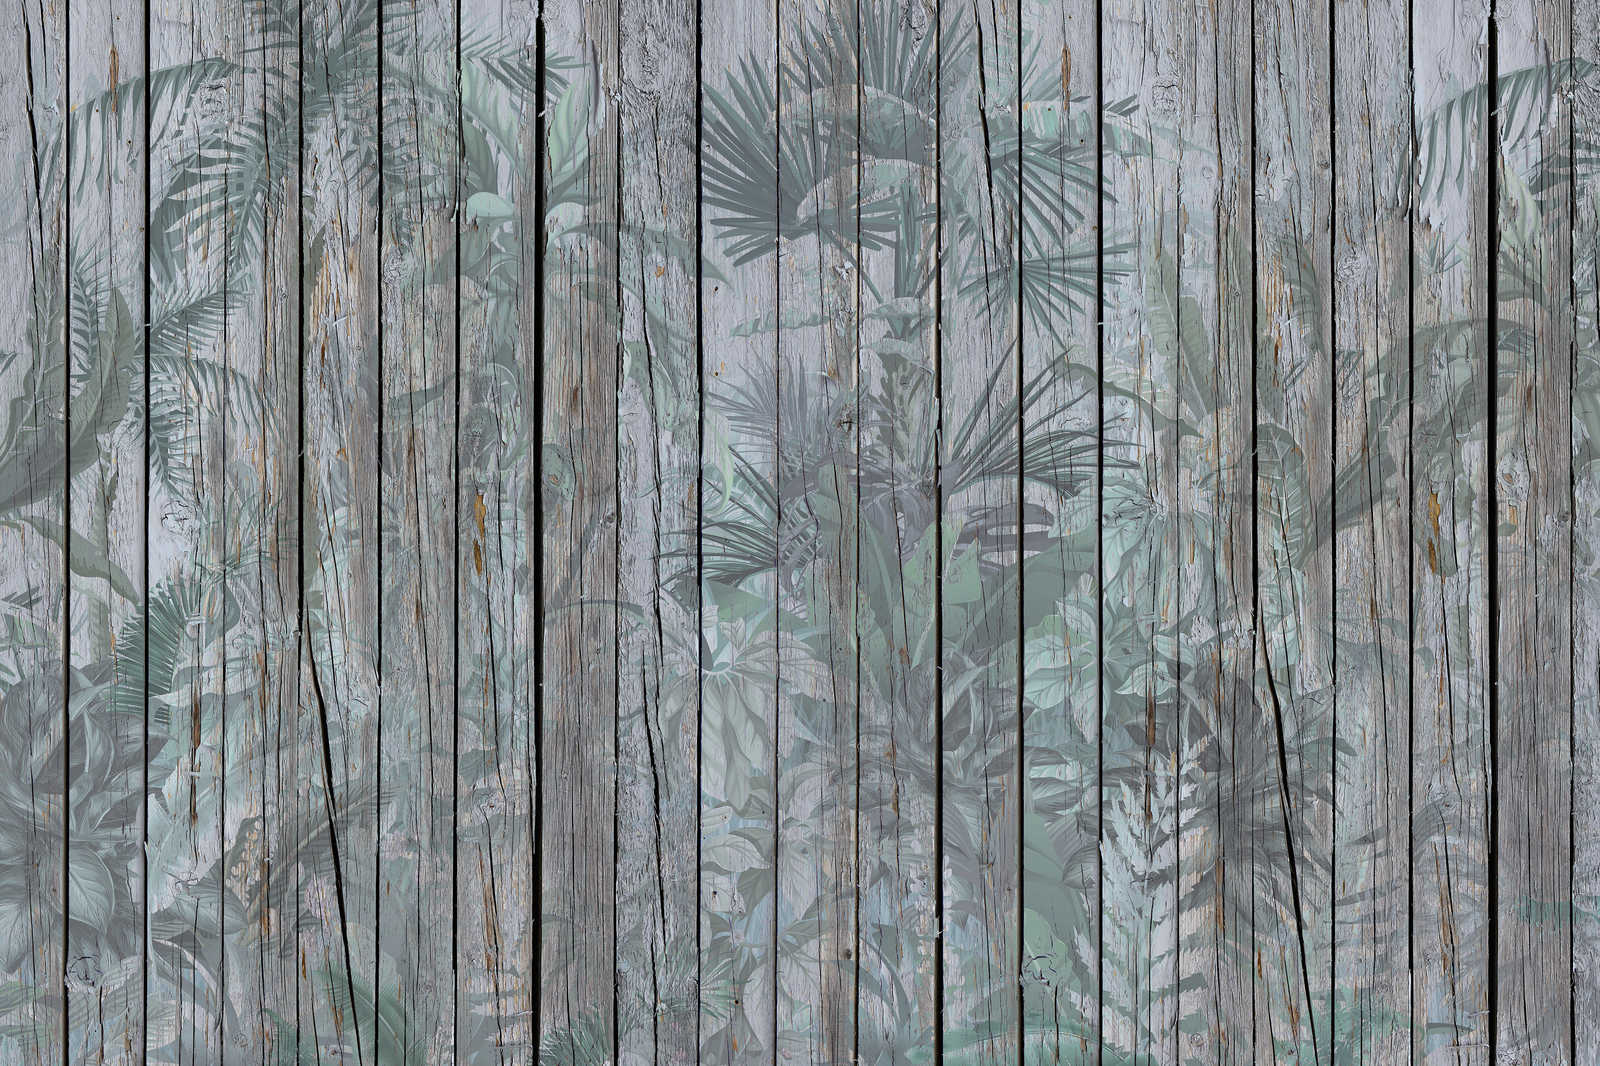             Tableau toile bois avec plantes de la jungle - 0,90 m x 0,60 m
        